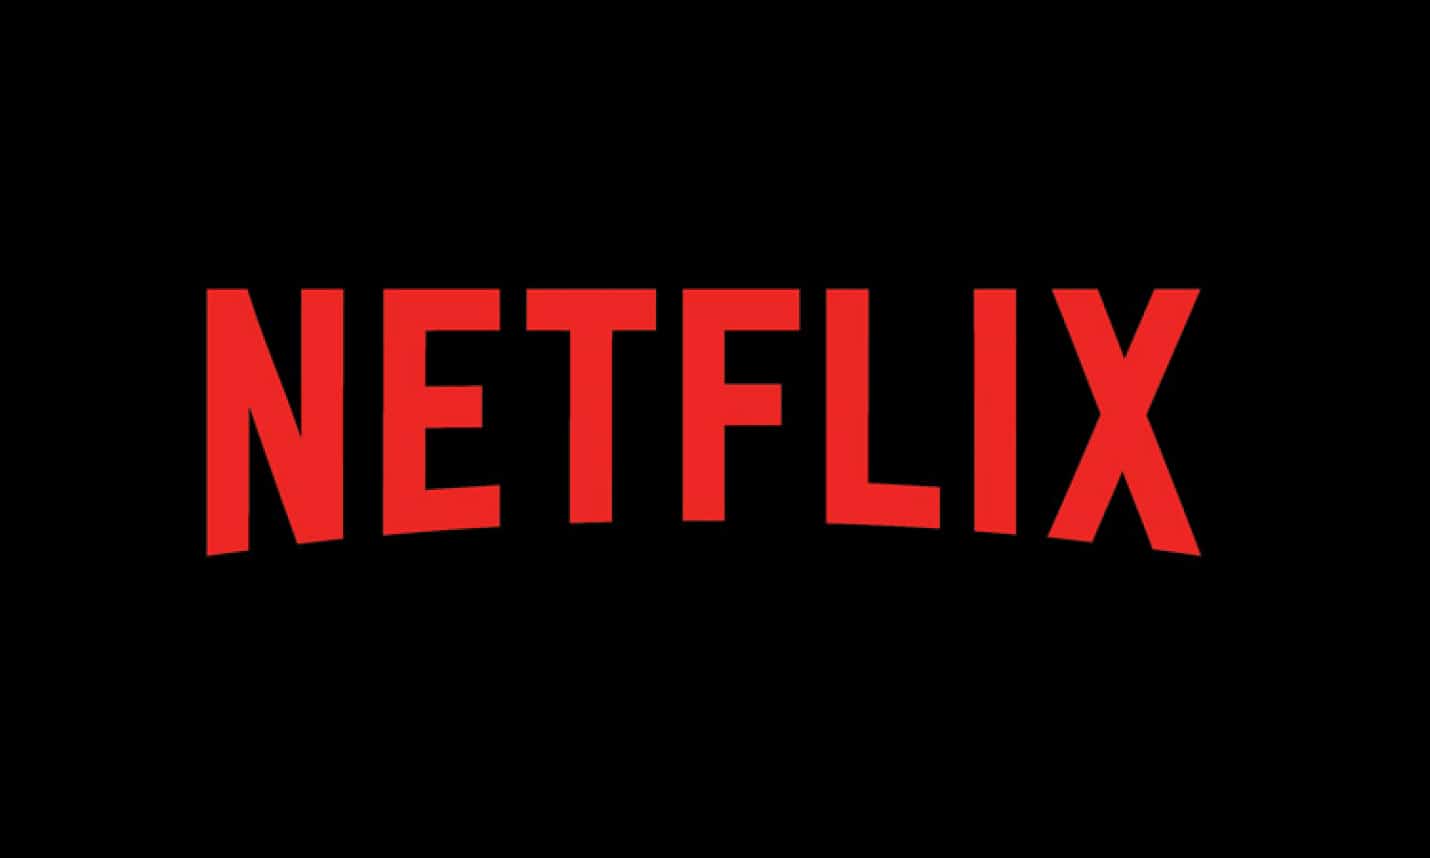 Códigos secretos para encontrar filmes na Netflix  Netflix filmes e series,  Sugestões de filmes netflix, Filmes netflix